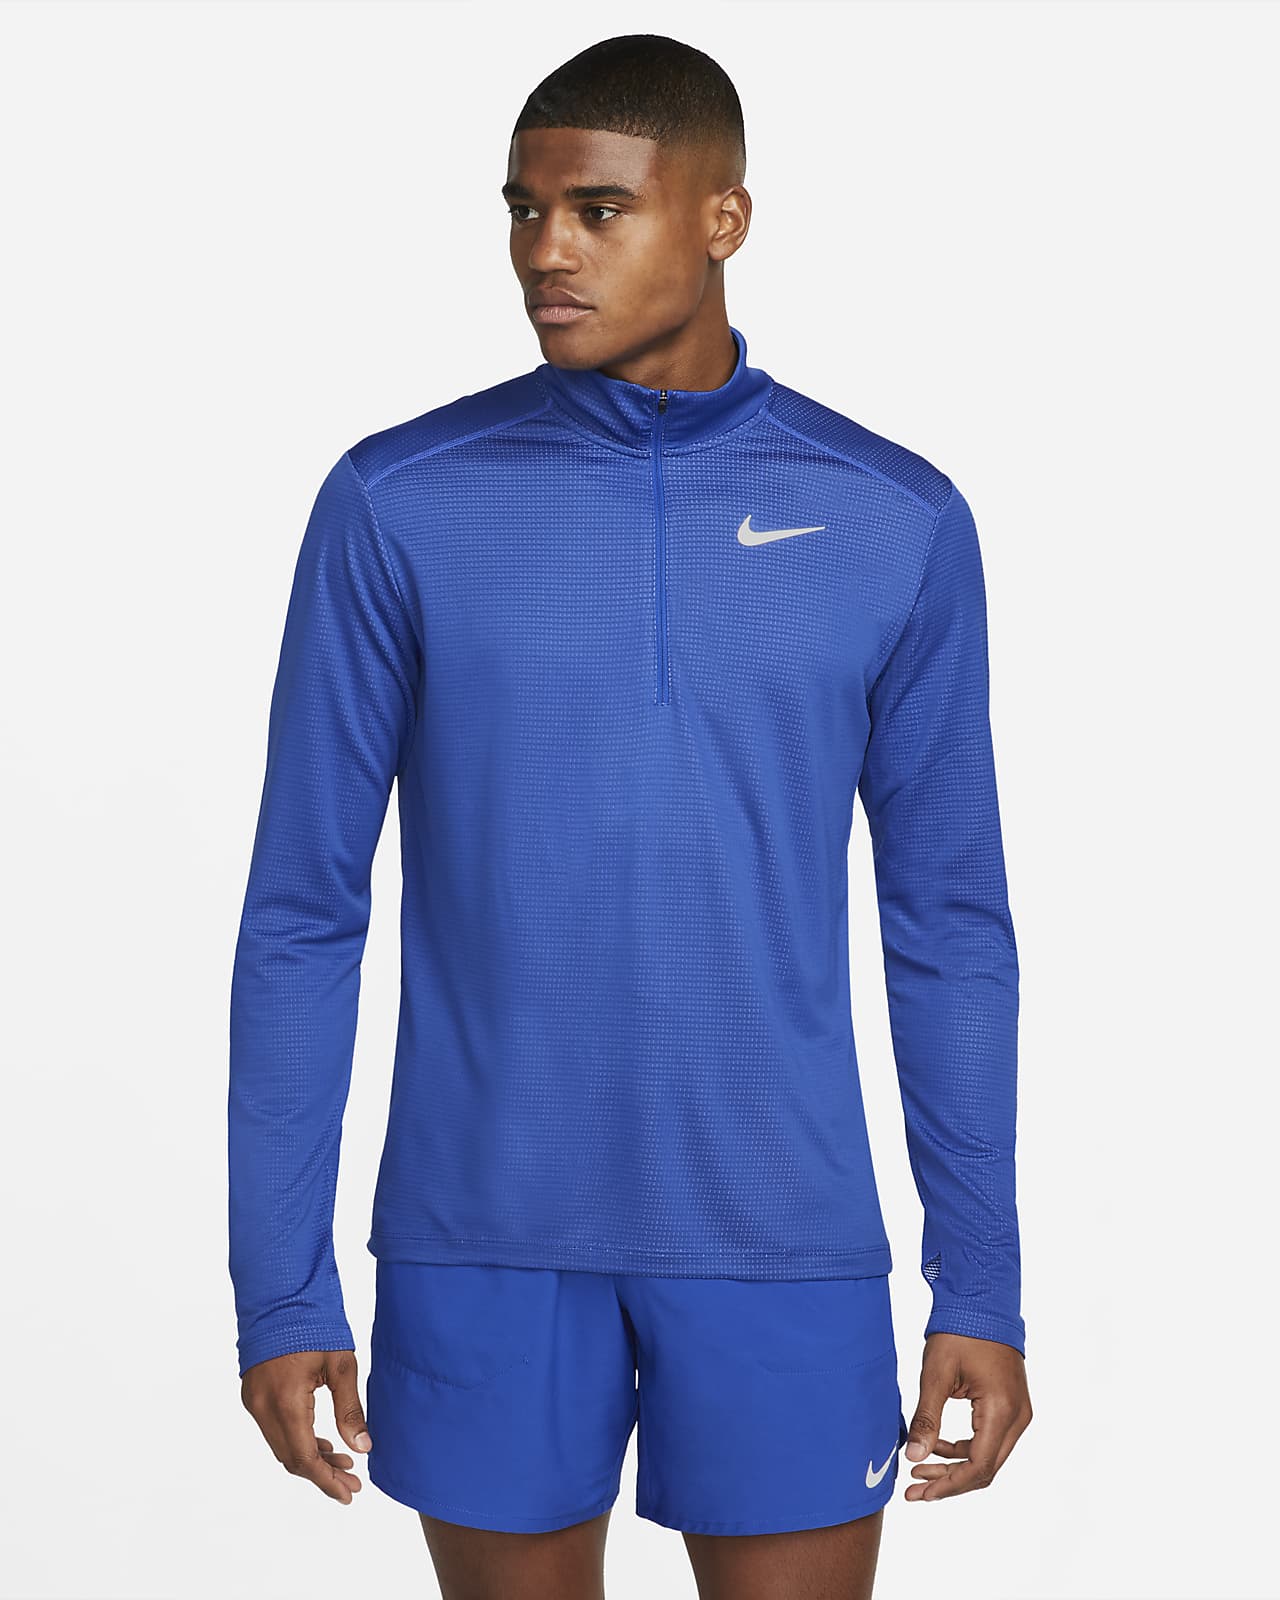 Löpartröja Nike Pacer med halv dragkedja för män